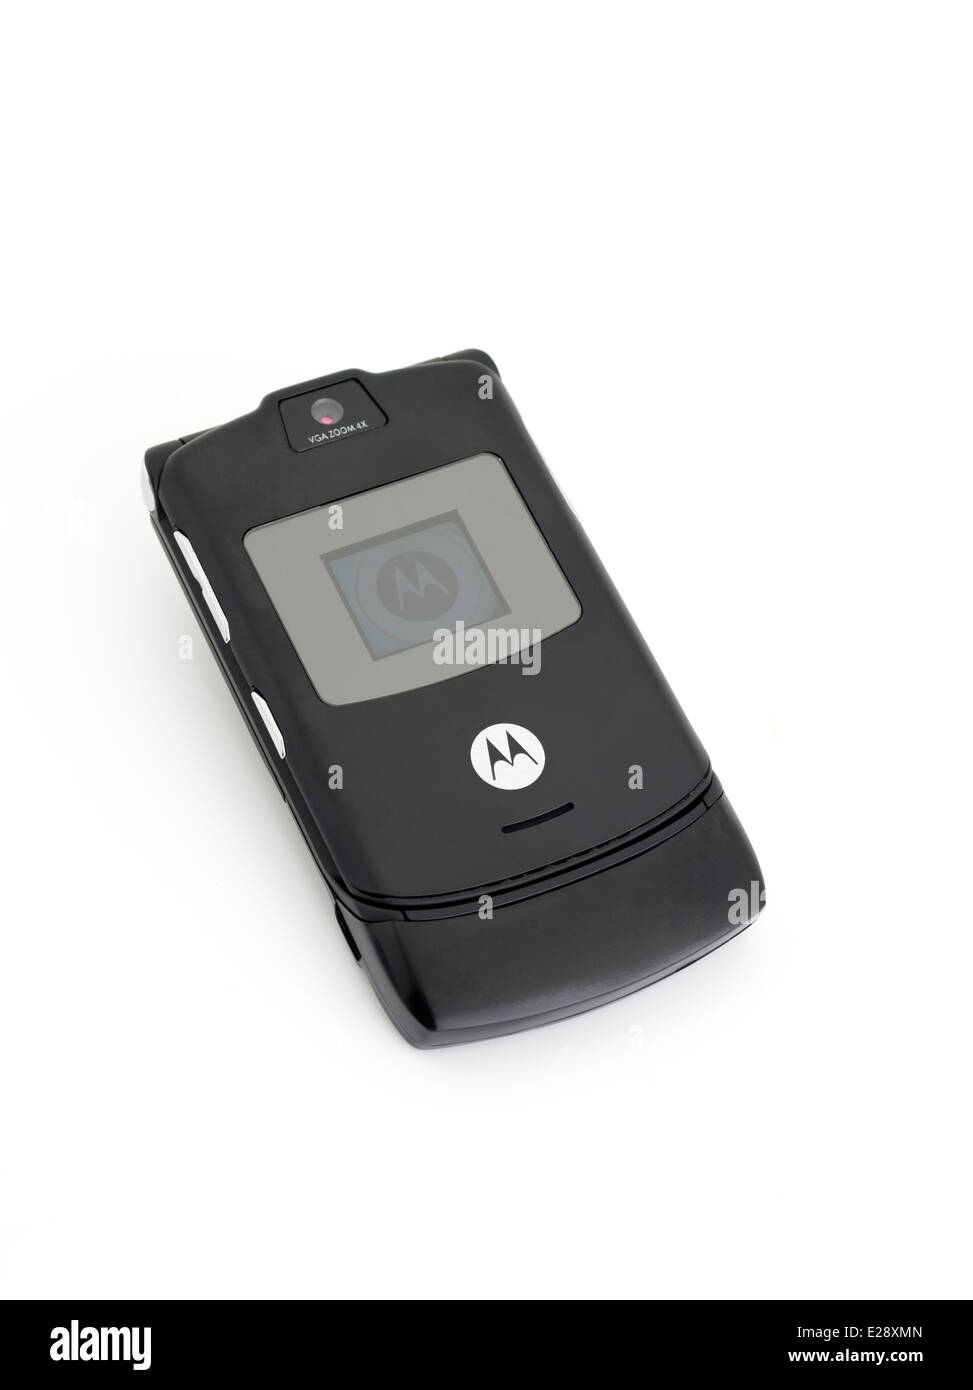 Motorola Razr V3 mobile cellular phone released 2004 Stock Photo - Alamy